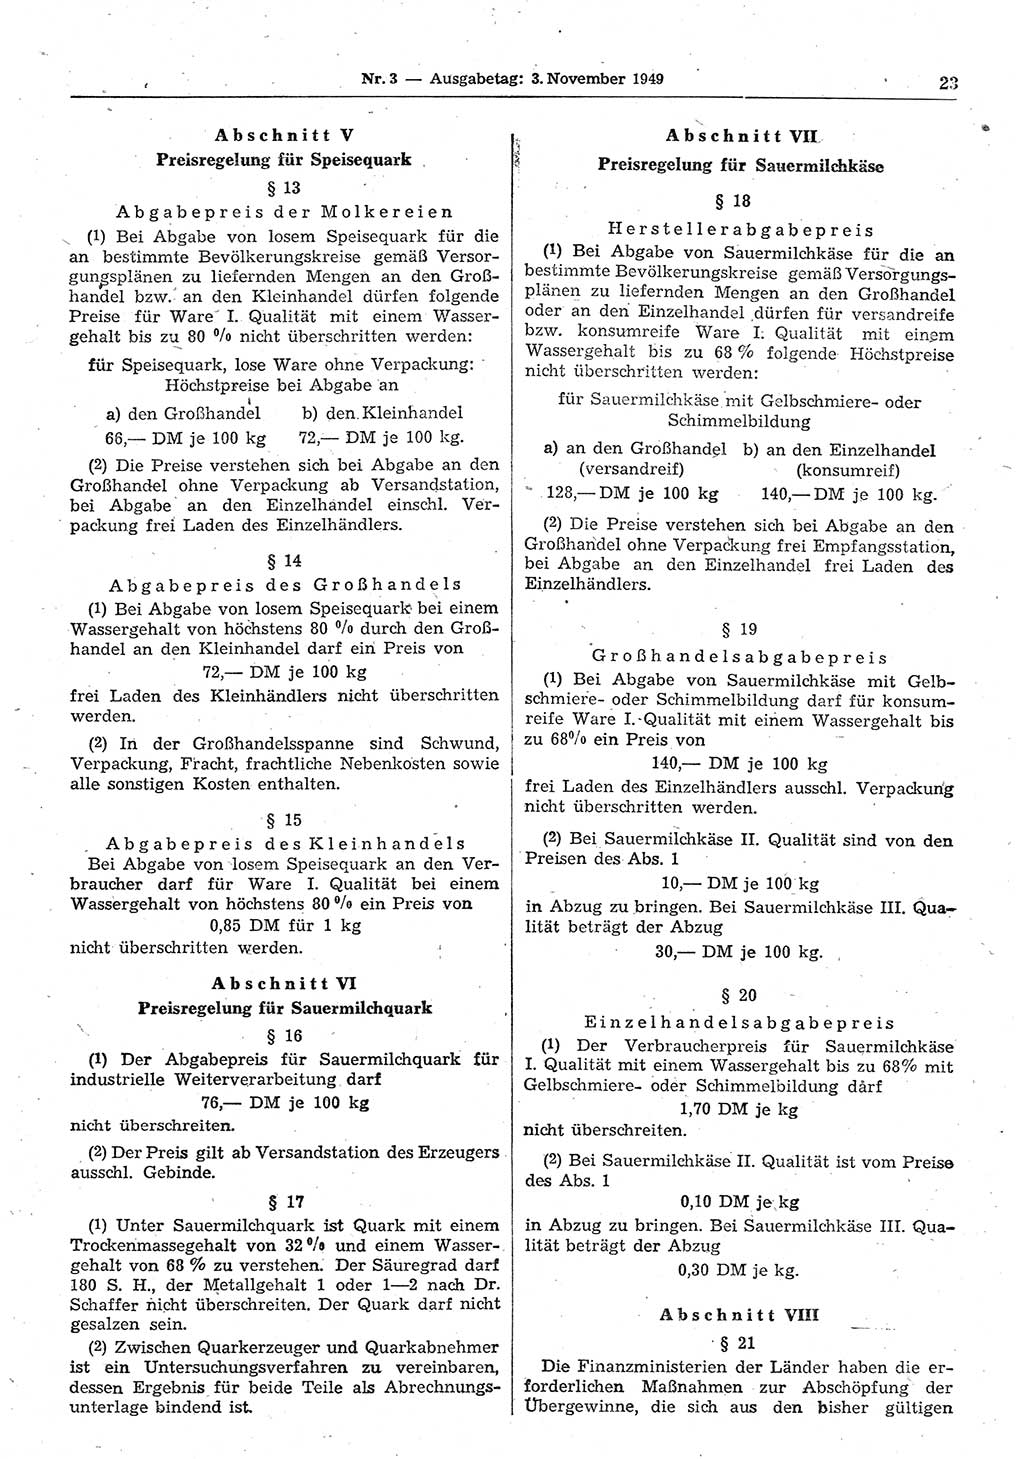 Gesetzblatt (GBl.) der Deutschen Demokratischen Republik (DDR) 1949, Seite 23 (GBl. DDR 1949, S. 23)